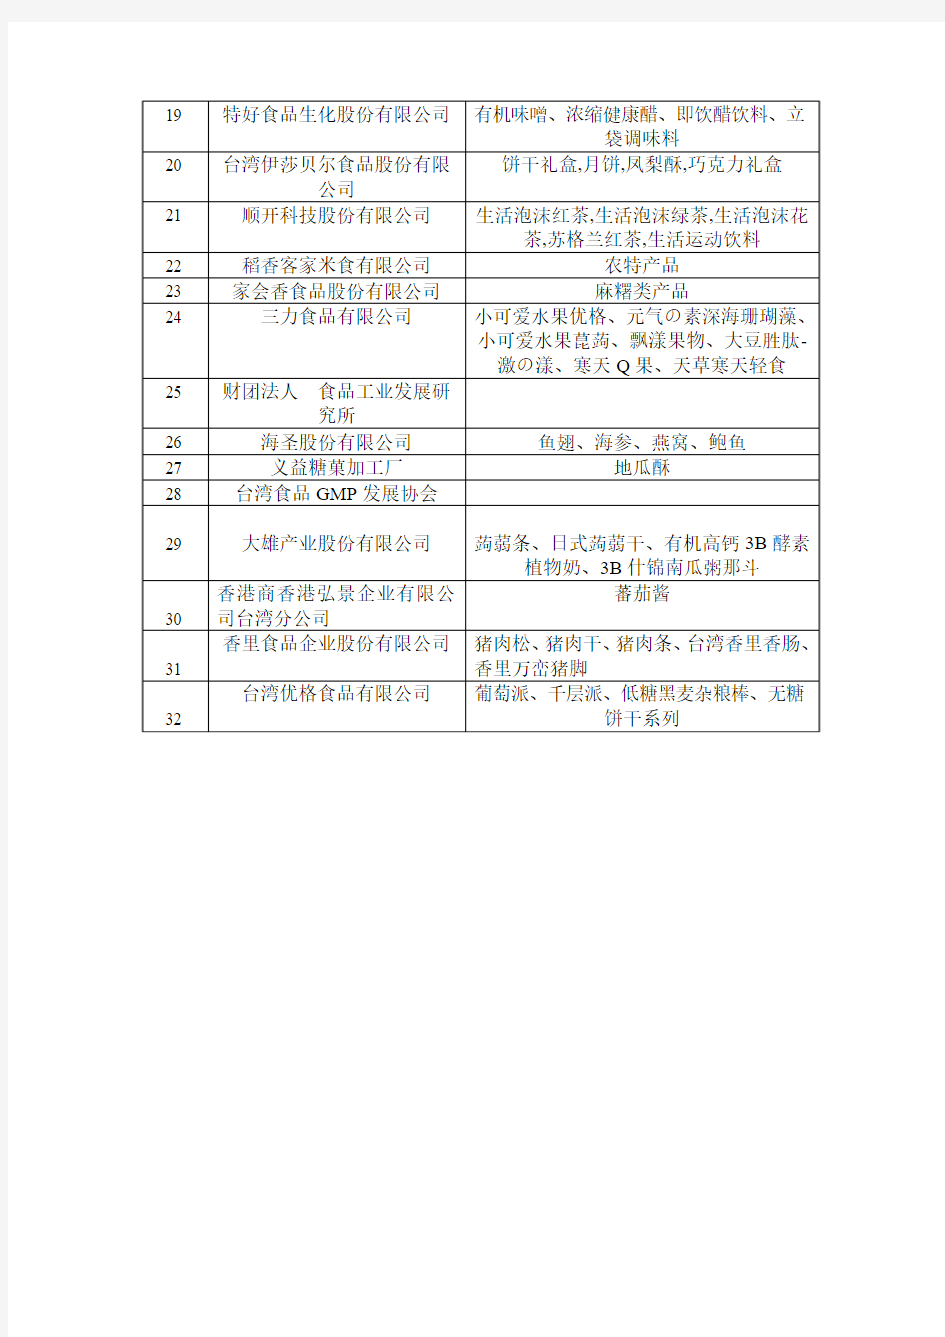 台湾食品企业名单